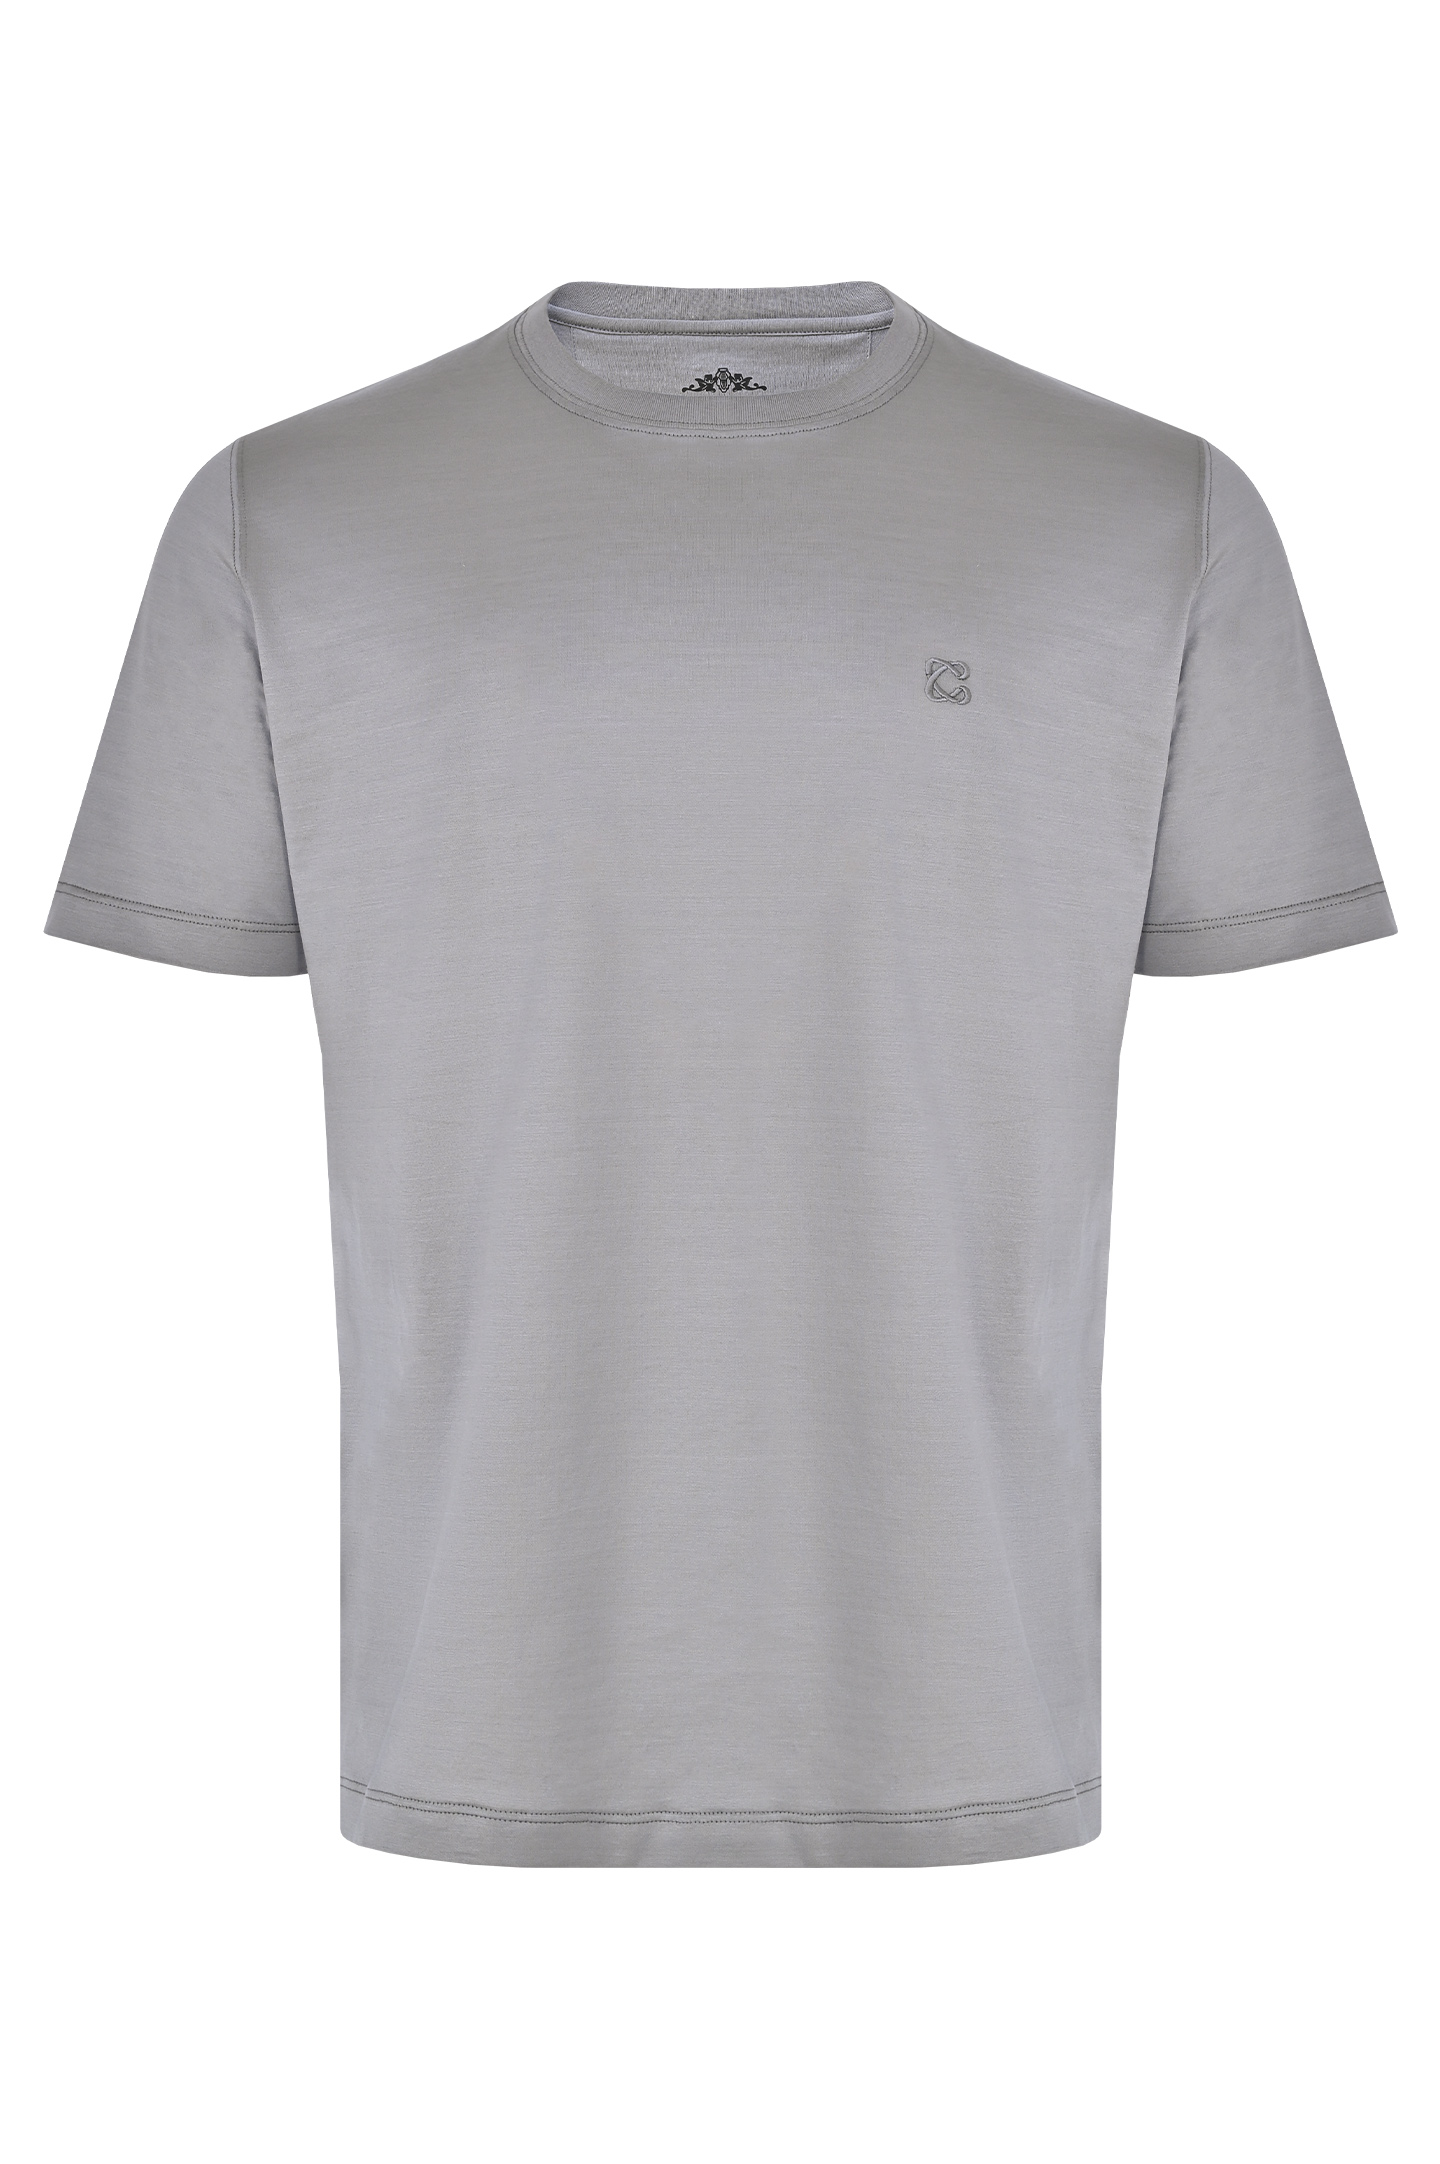 Базовая хлопковая футболка CASTANGIA DM66, цвет: Серый, Мужской